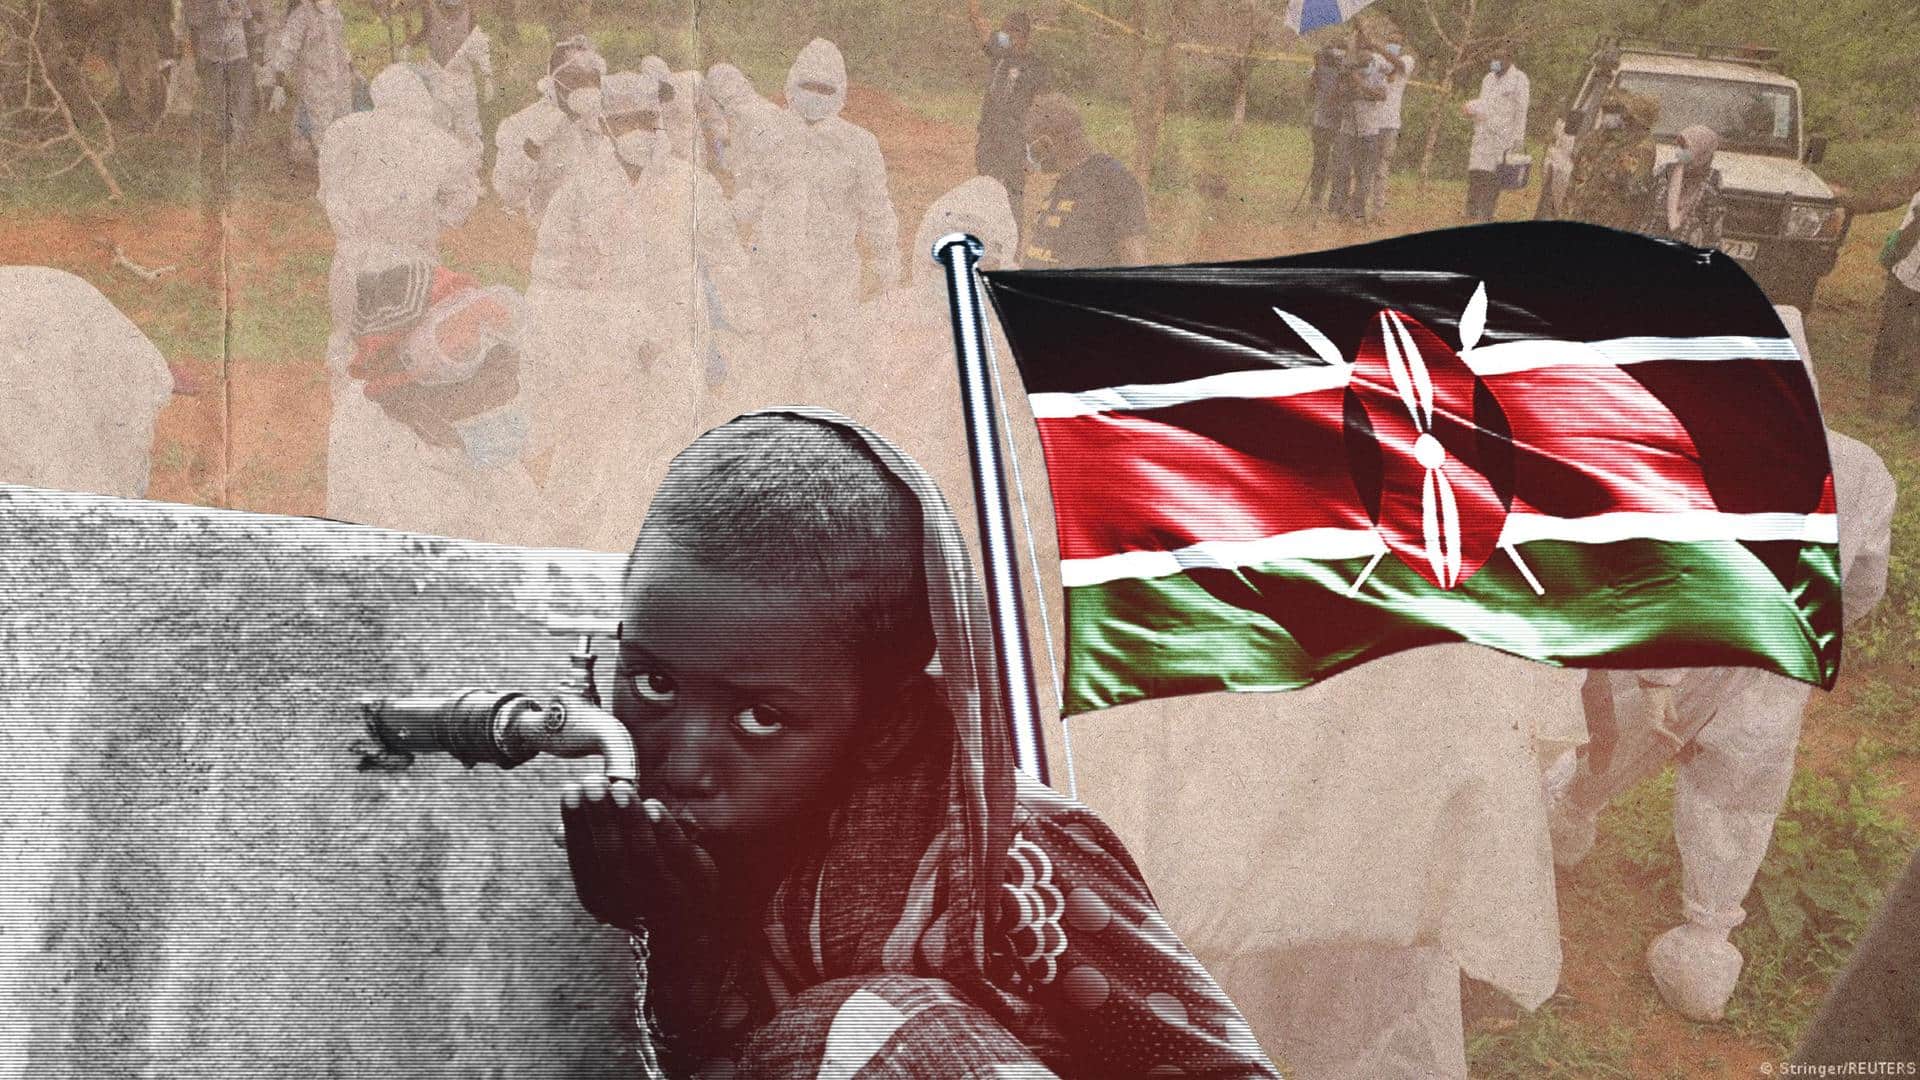 Starve-to-meet-Jesus cult case: 83 bodies found in Kenyan pastor's land